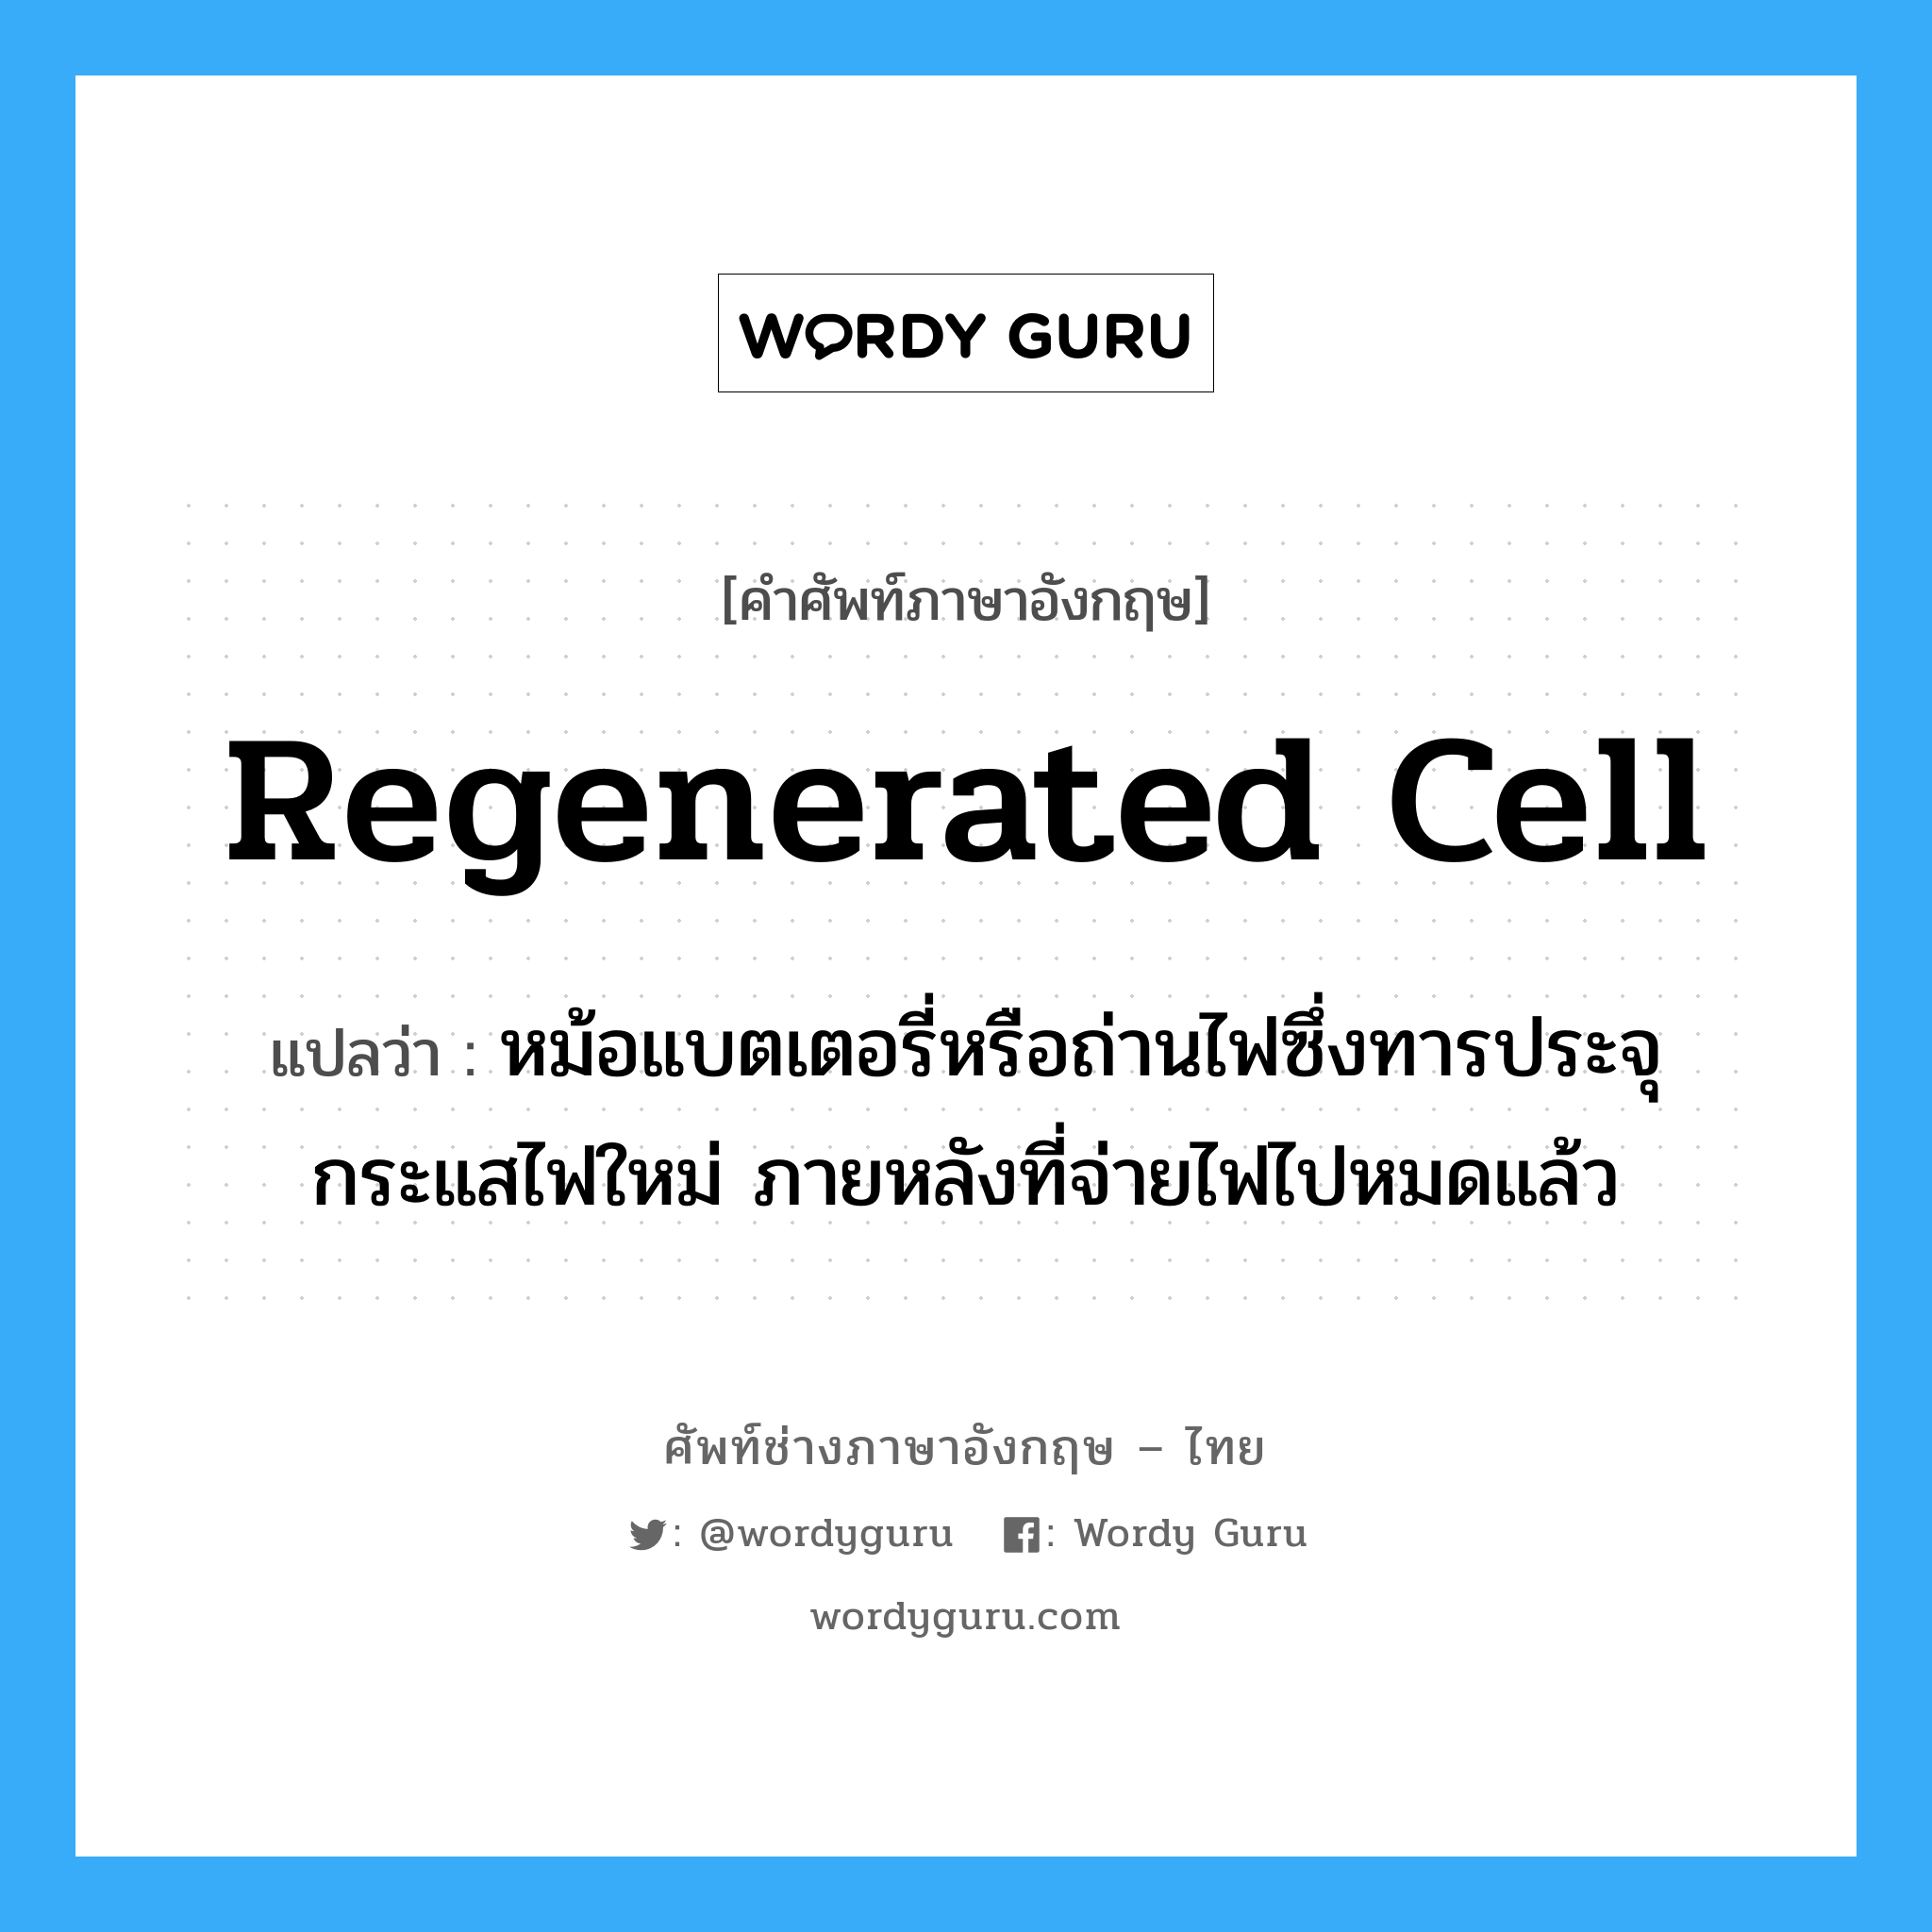 regenerated cell แปลว่า?, คำศัพท์ช่างภาษาอังกฤษ - ไทย regenerated cell คำศัพท์ภาษาอังกฤษ regenerated cell แปลว่า หม้อแบตเตอรี่หรือถ่านไฟซึ่งทารประจุกระแสไฟใหม่ ภายหลังที่จ่ายไฟไปหมดแล้ว